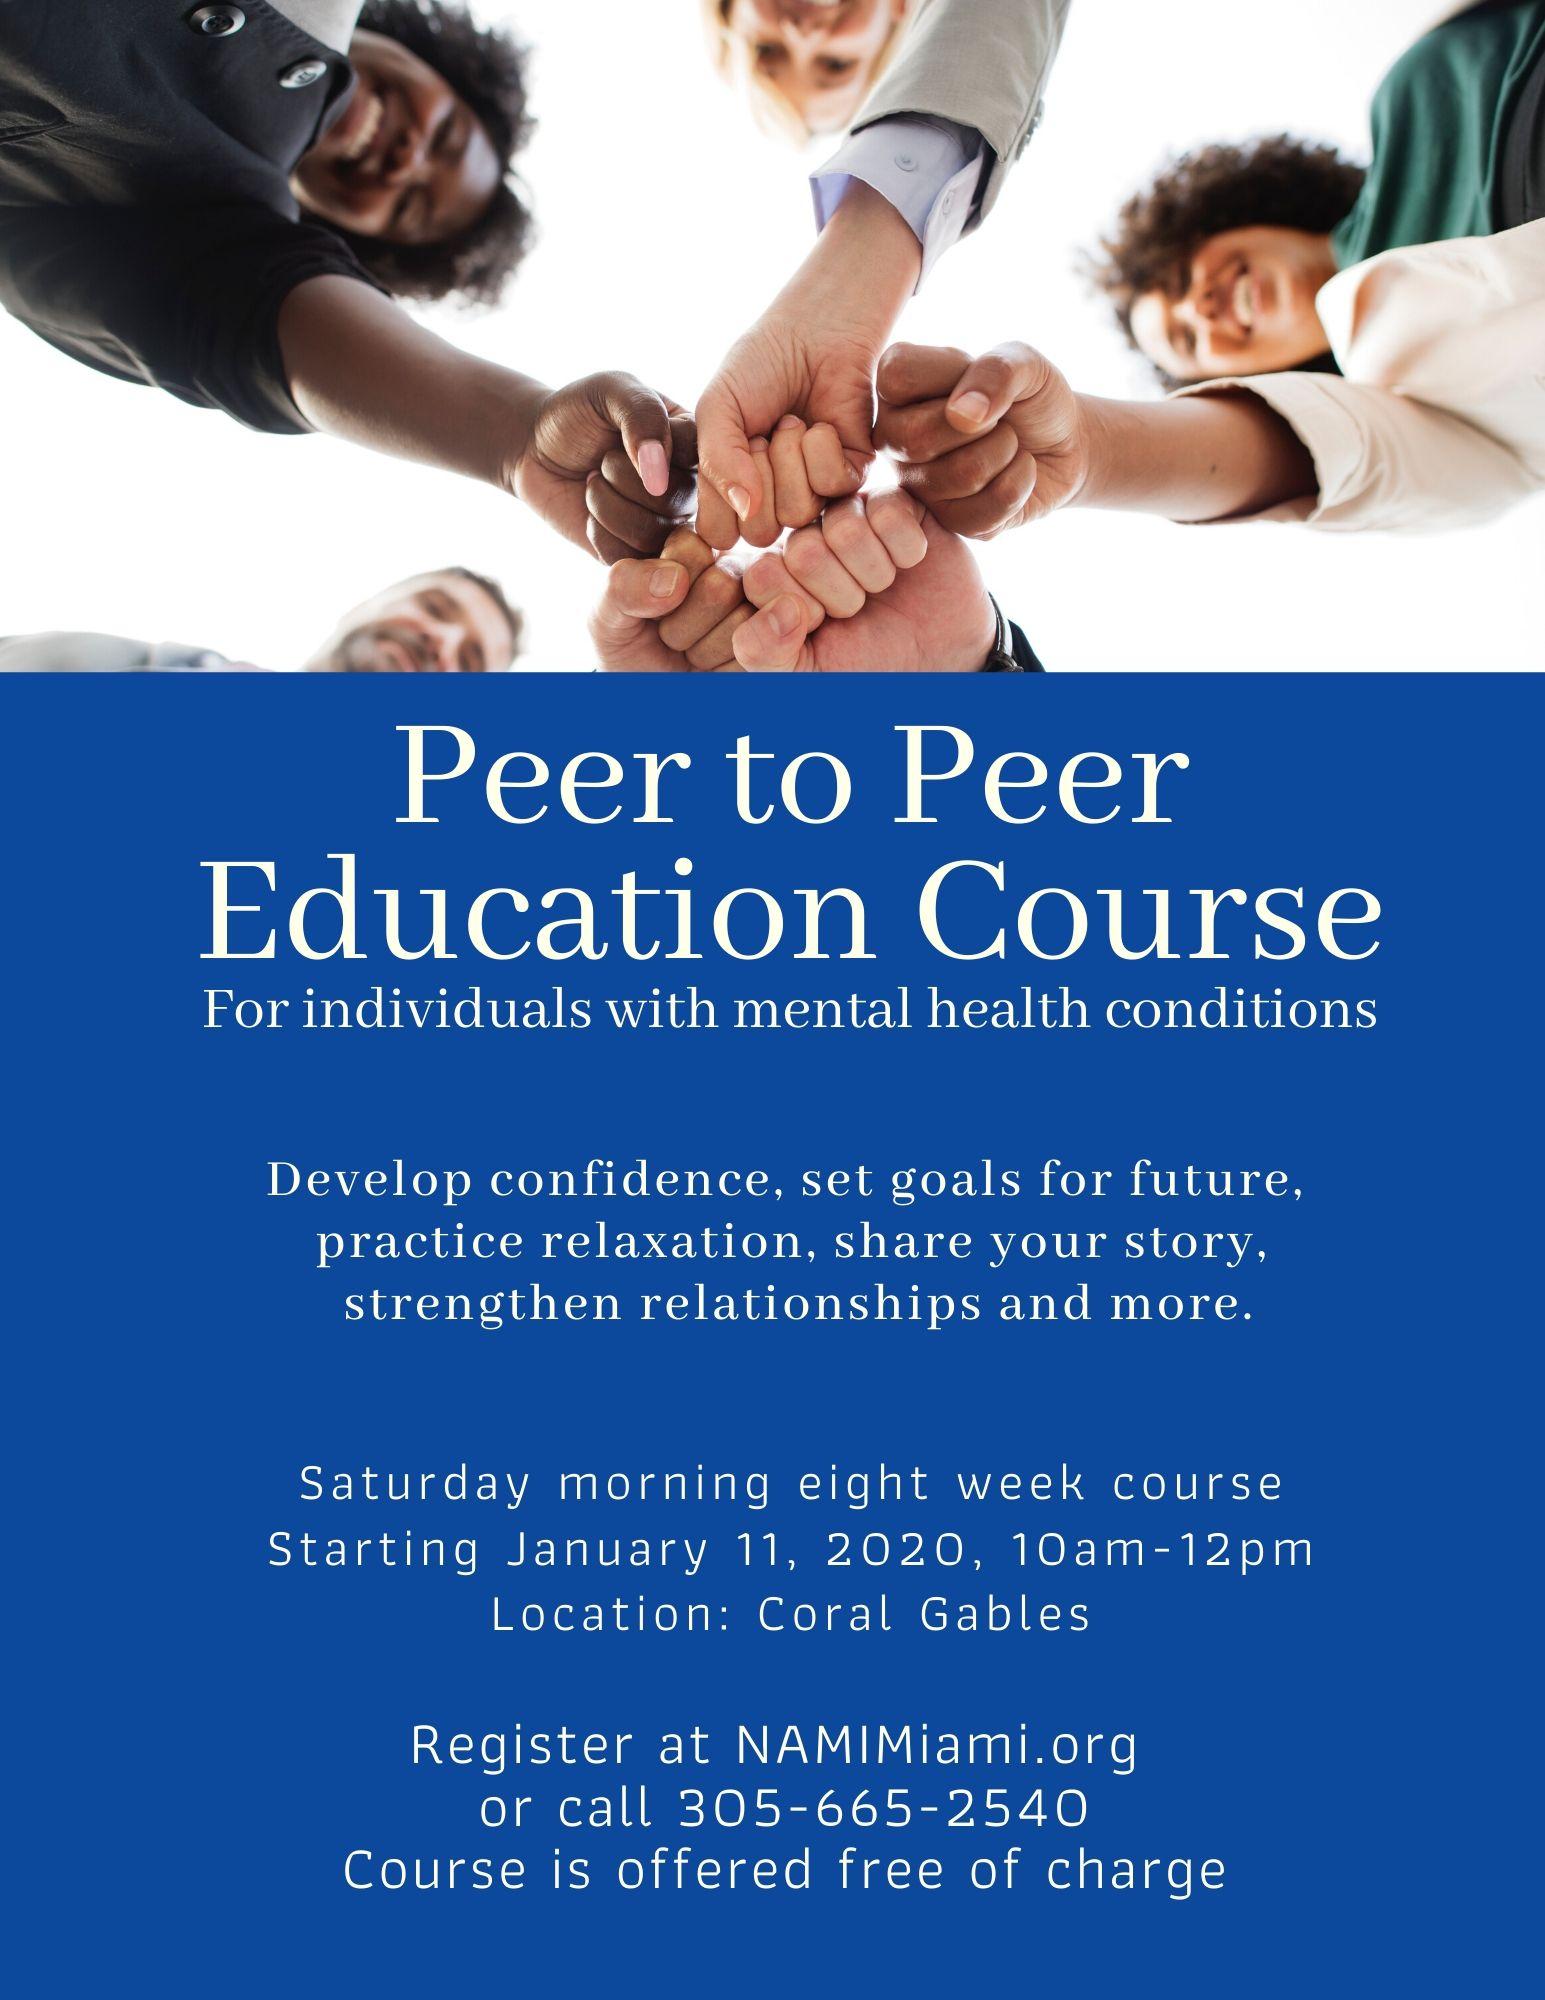 FREE - Peer to Peer Mental Health Course